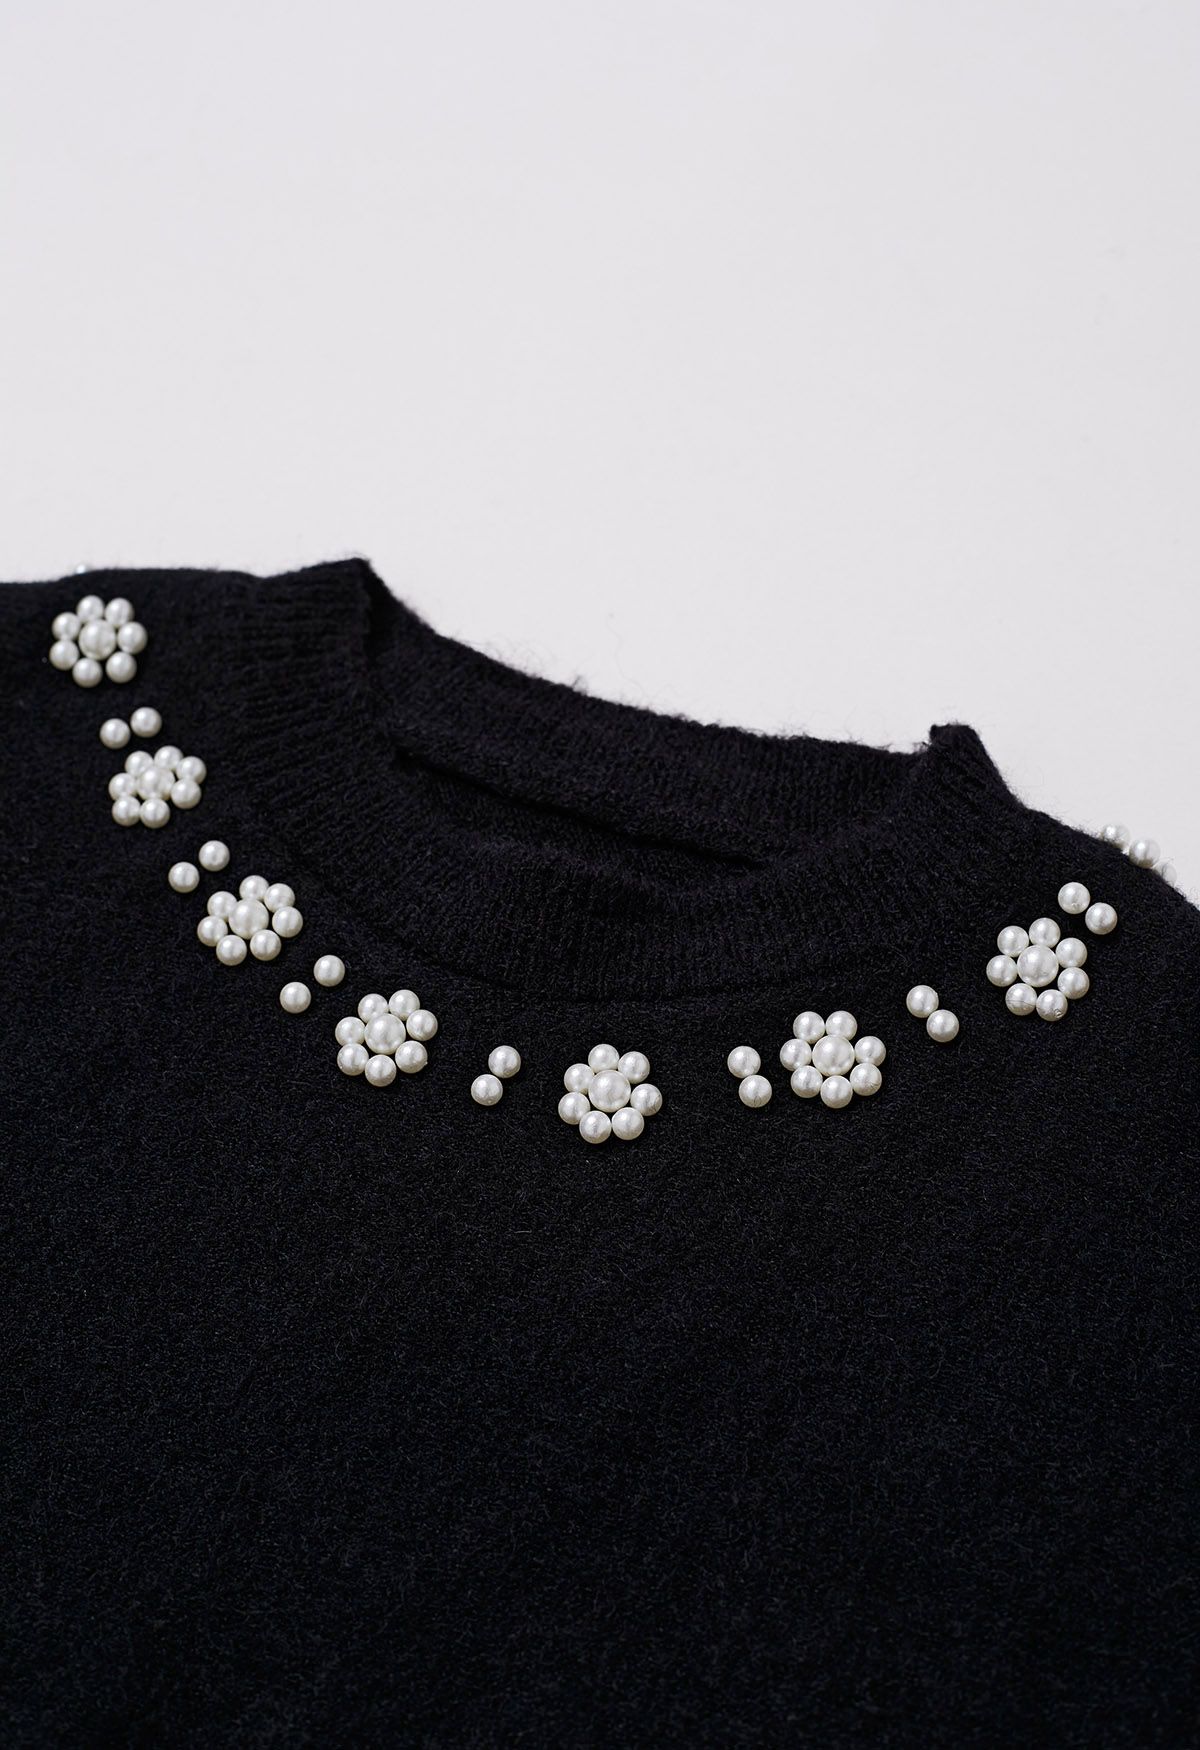 Geripptes Twinset-Kleid mit Perlenausschnitt in Schwarz